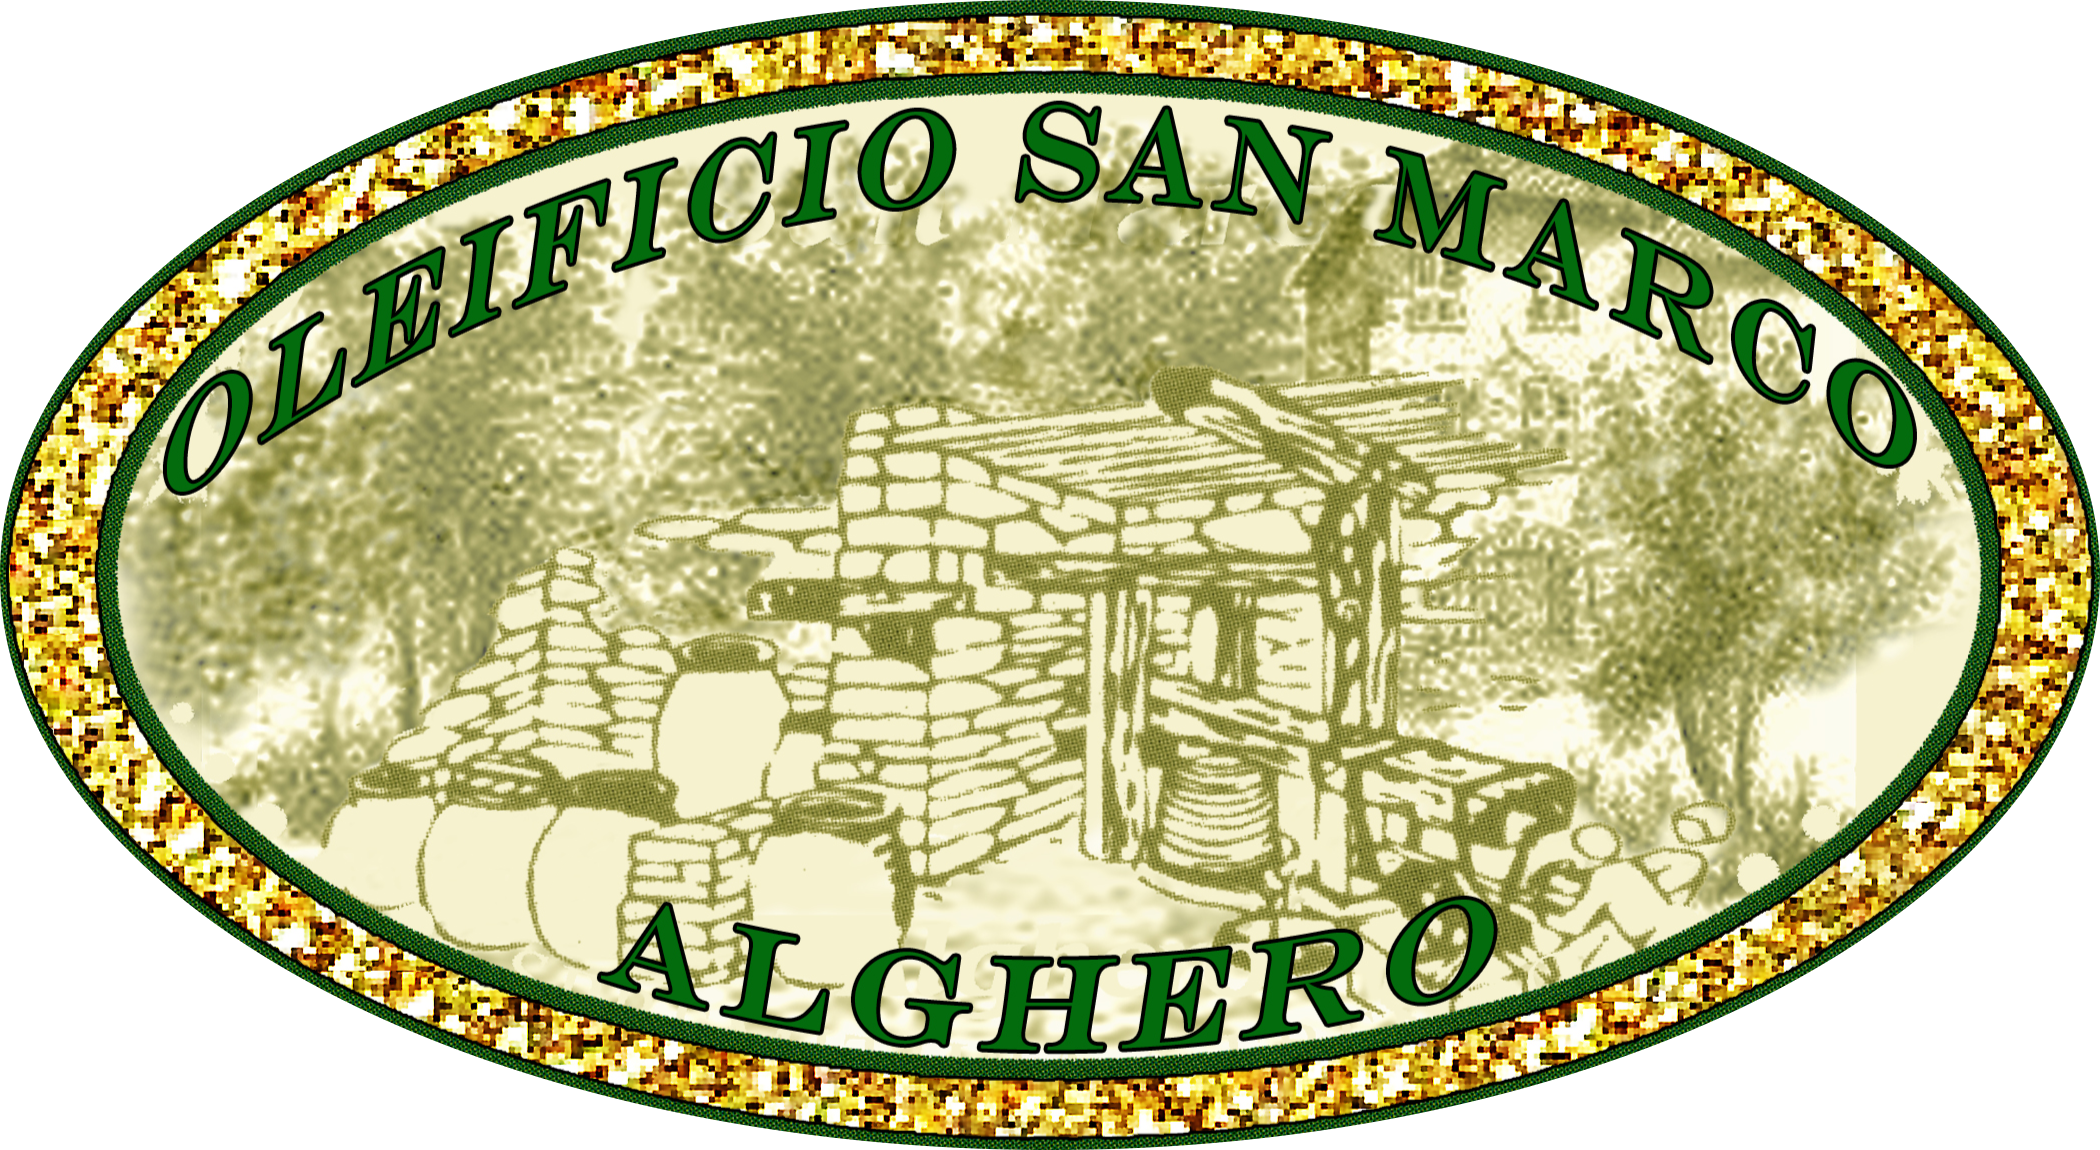 Oleificio San Marco Alghero